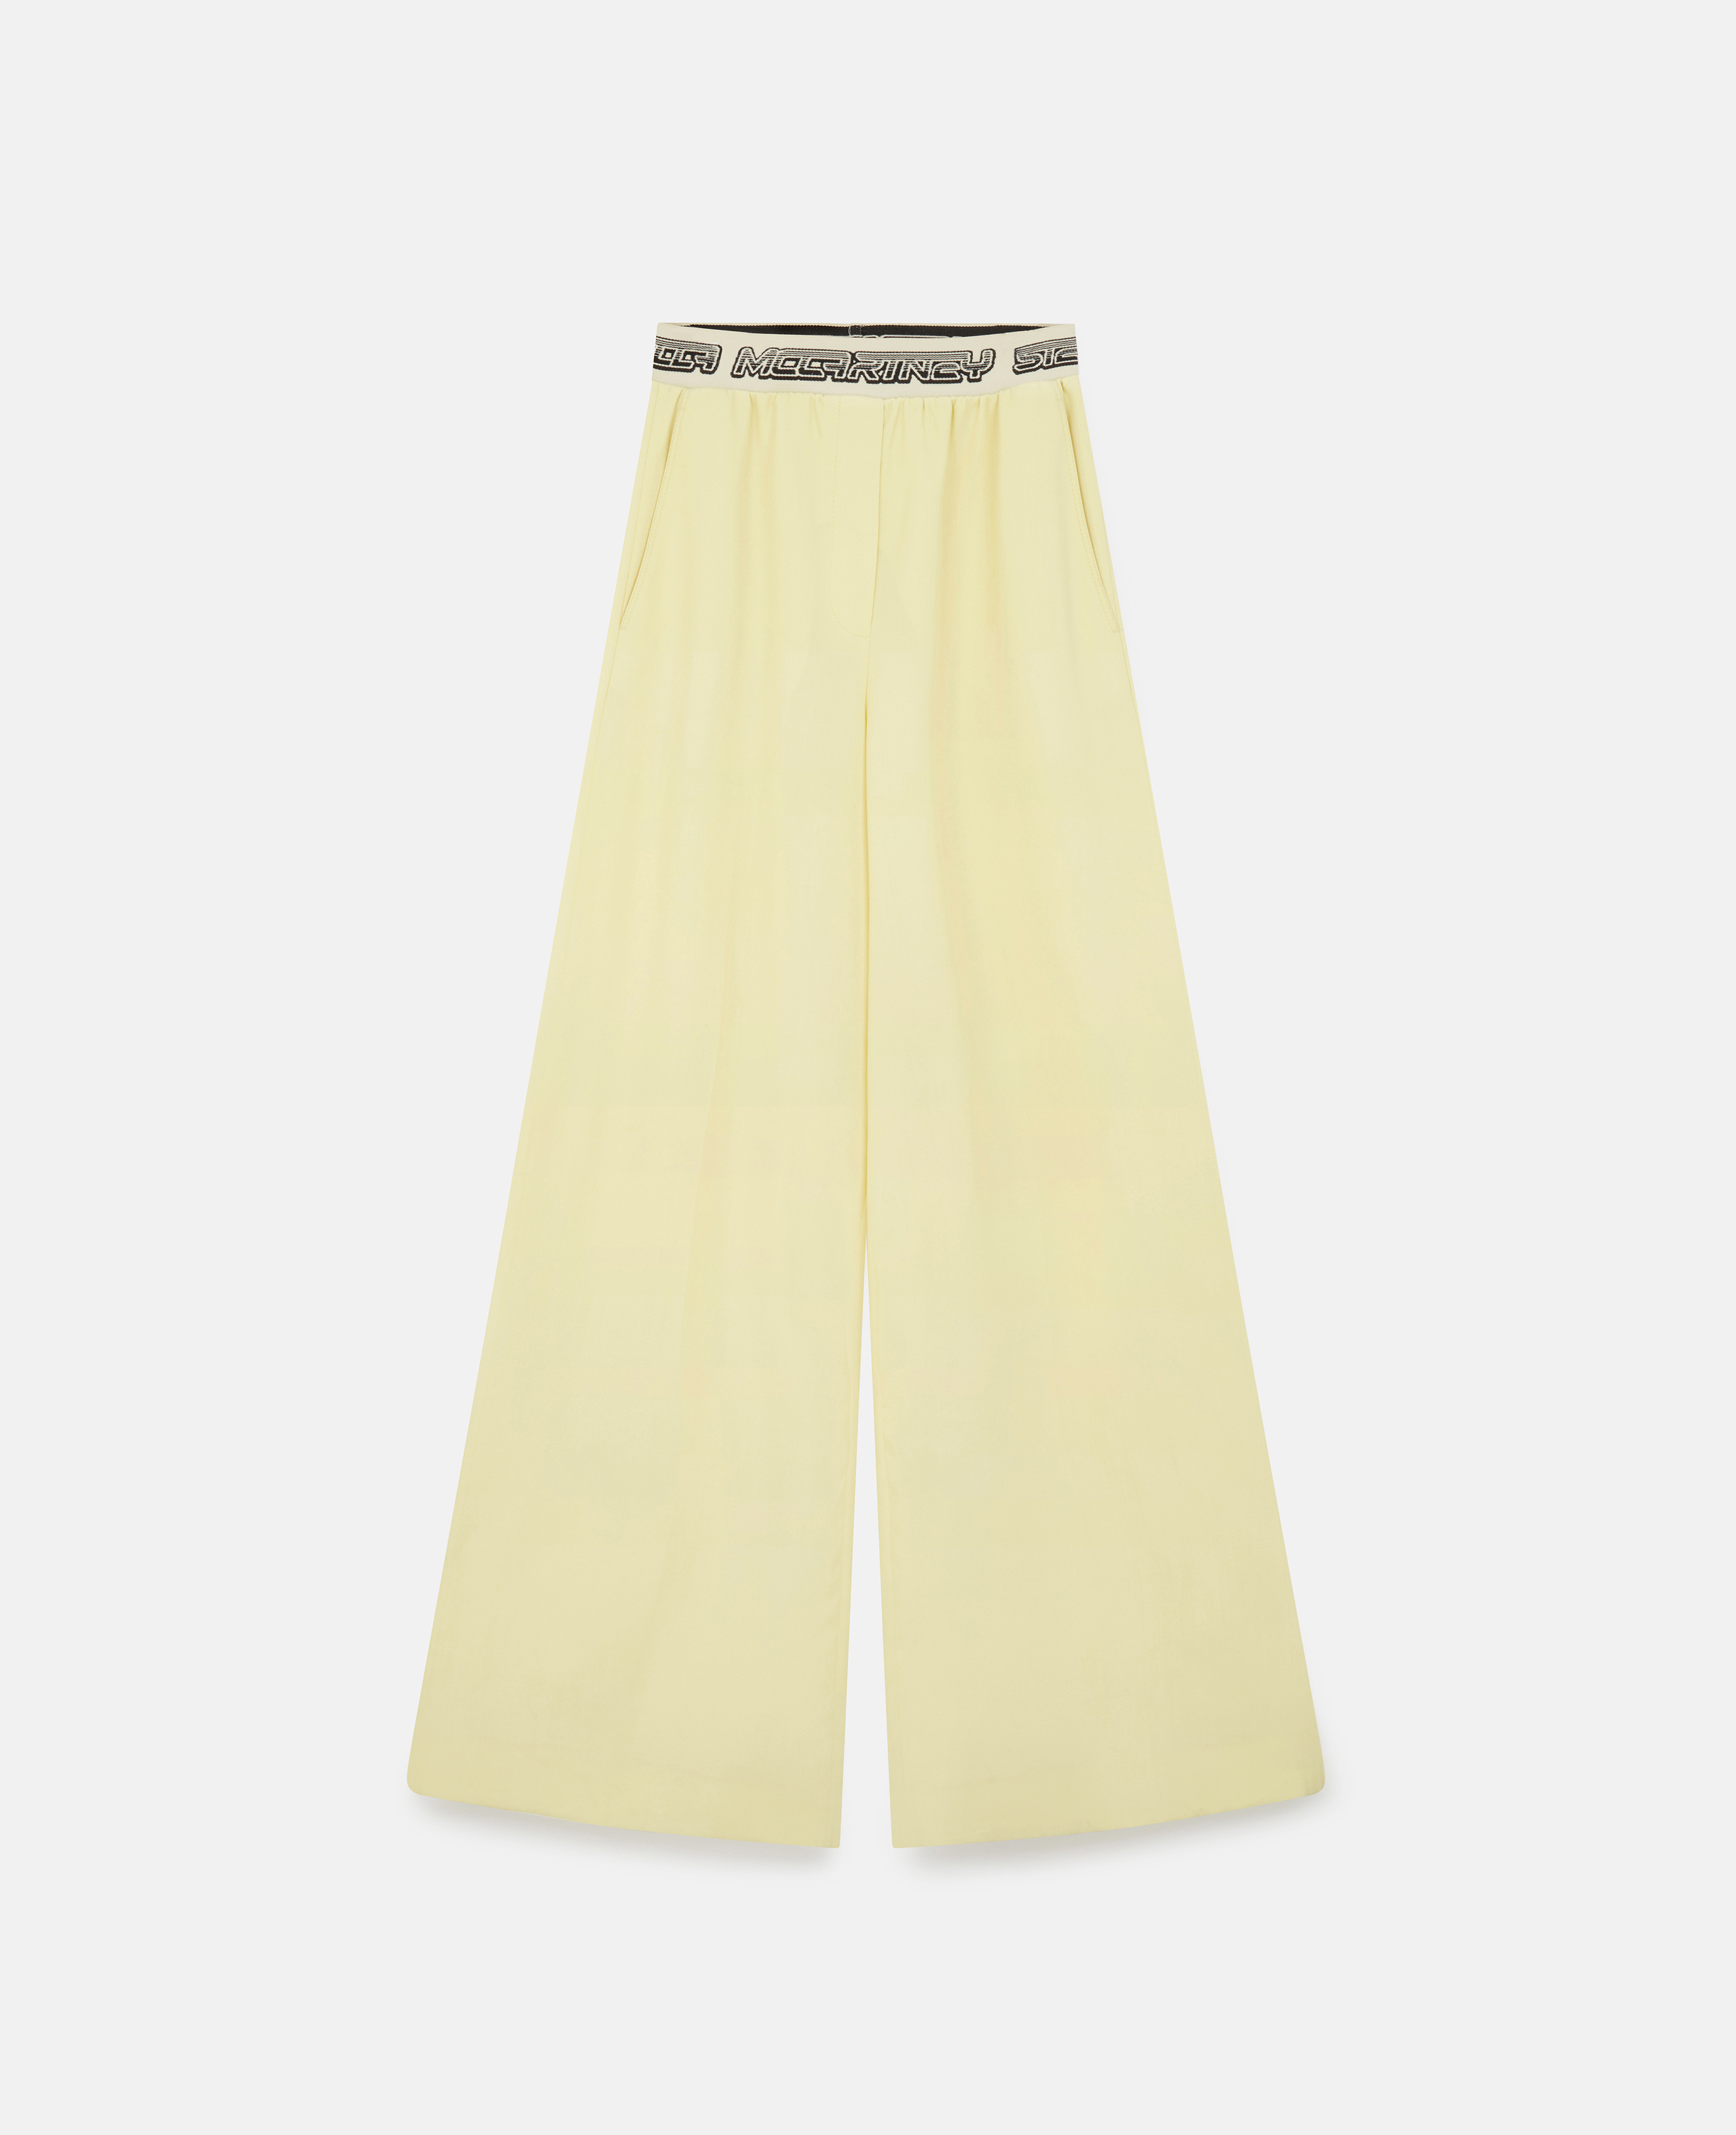 Stella McCartney - Logo Tape Pants, Woman, Sherbet Yellow, Size: 44